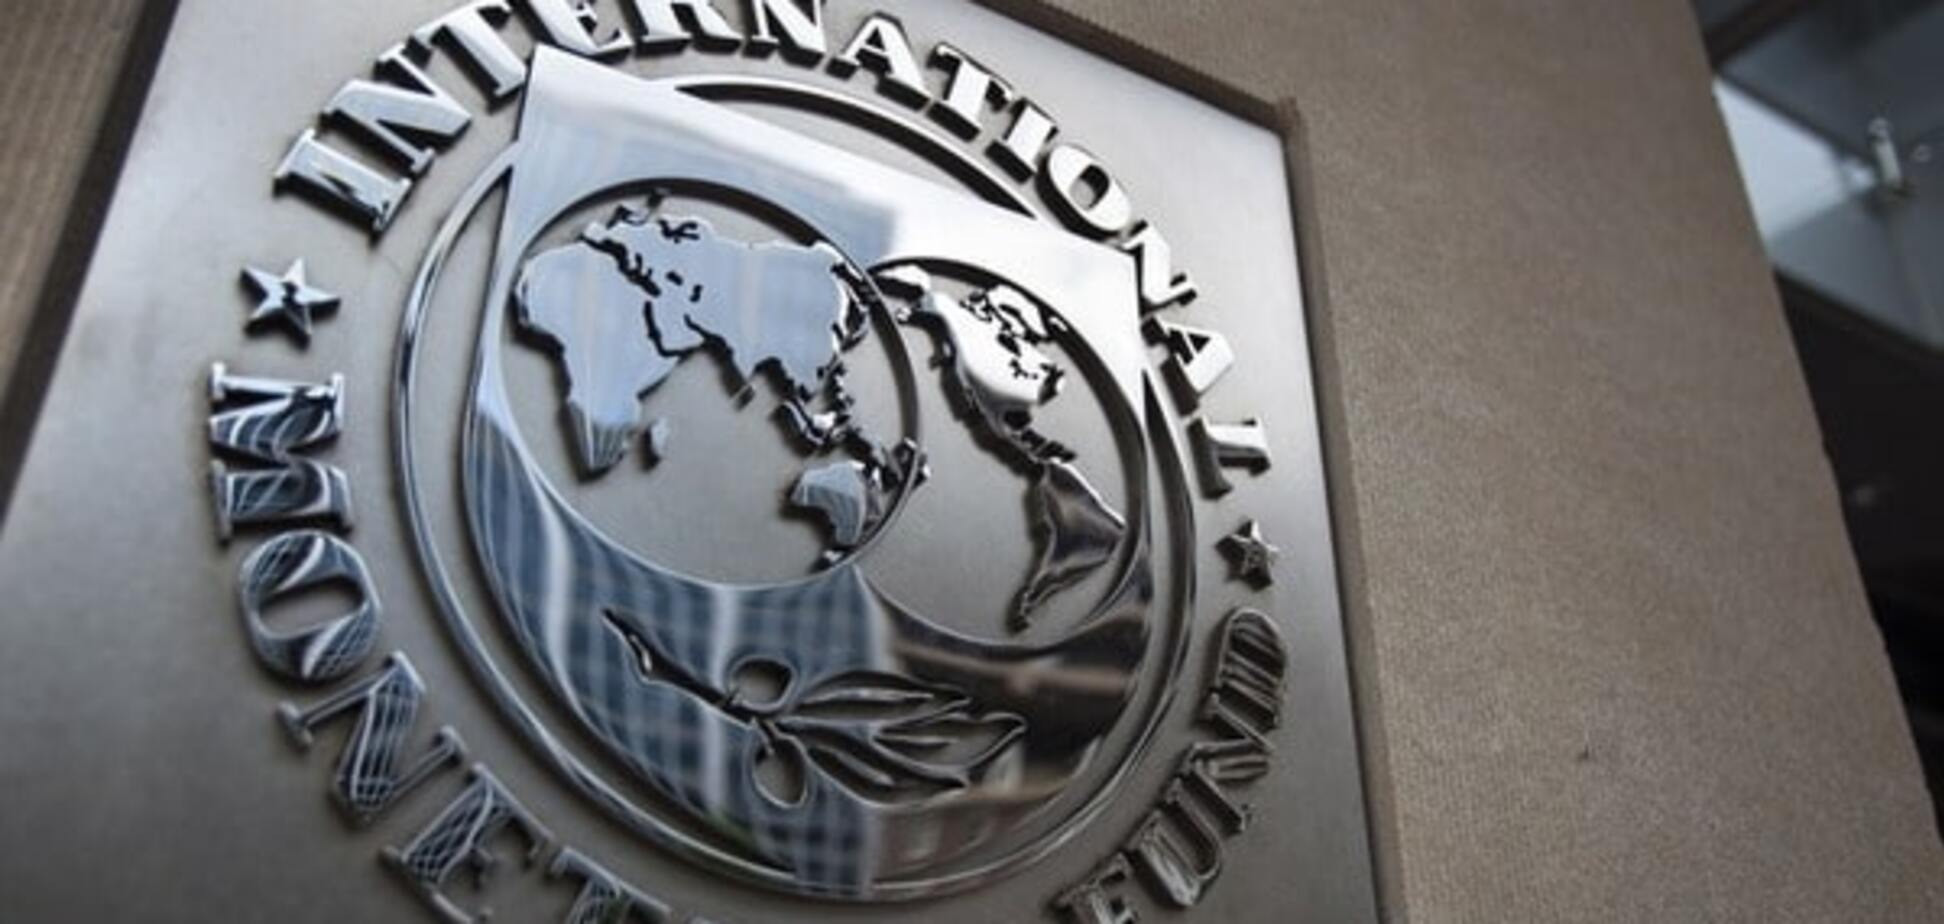 Продолжение работы Кабмина гарантирует транш от МВФ — Goldman Sachs